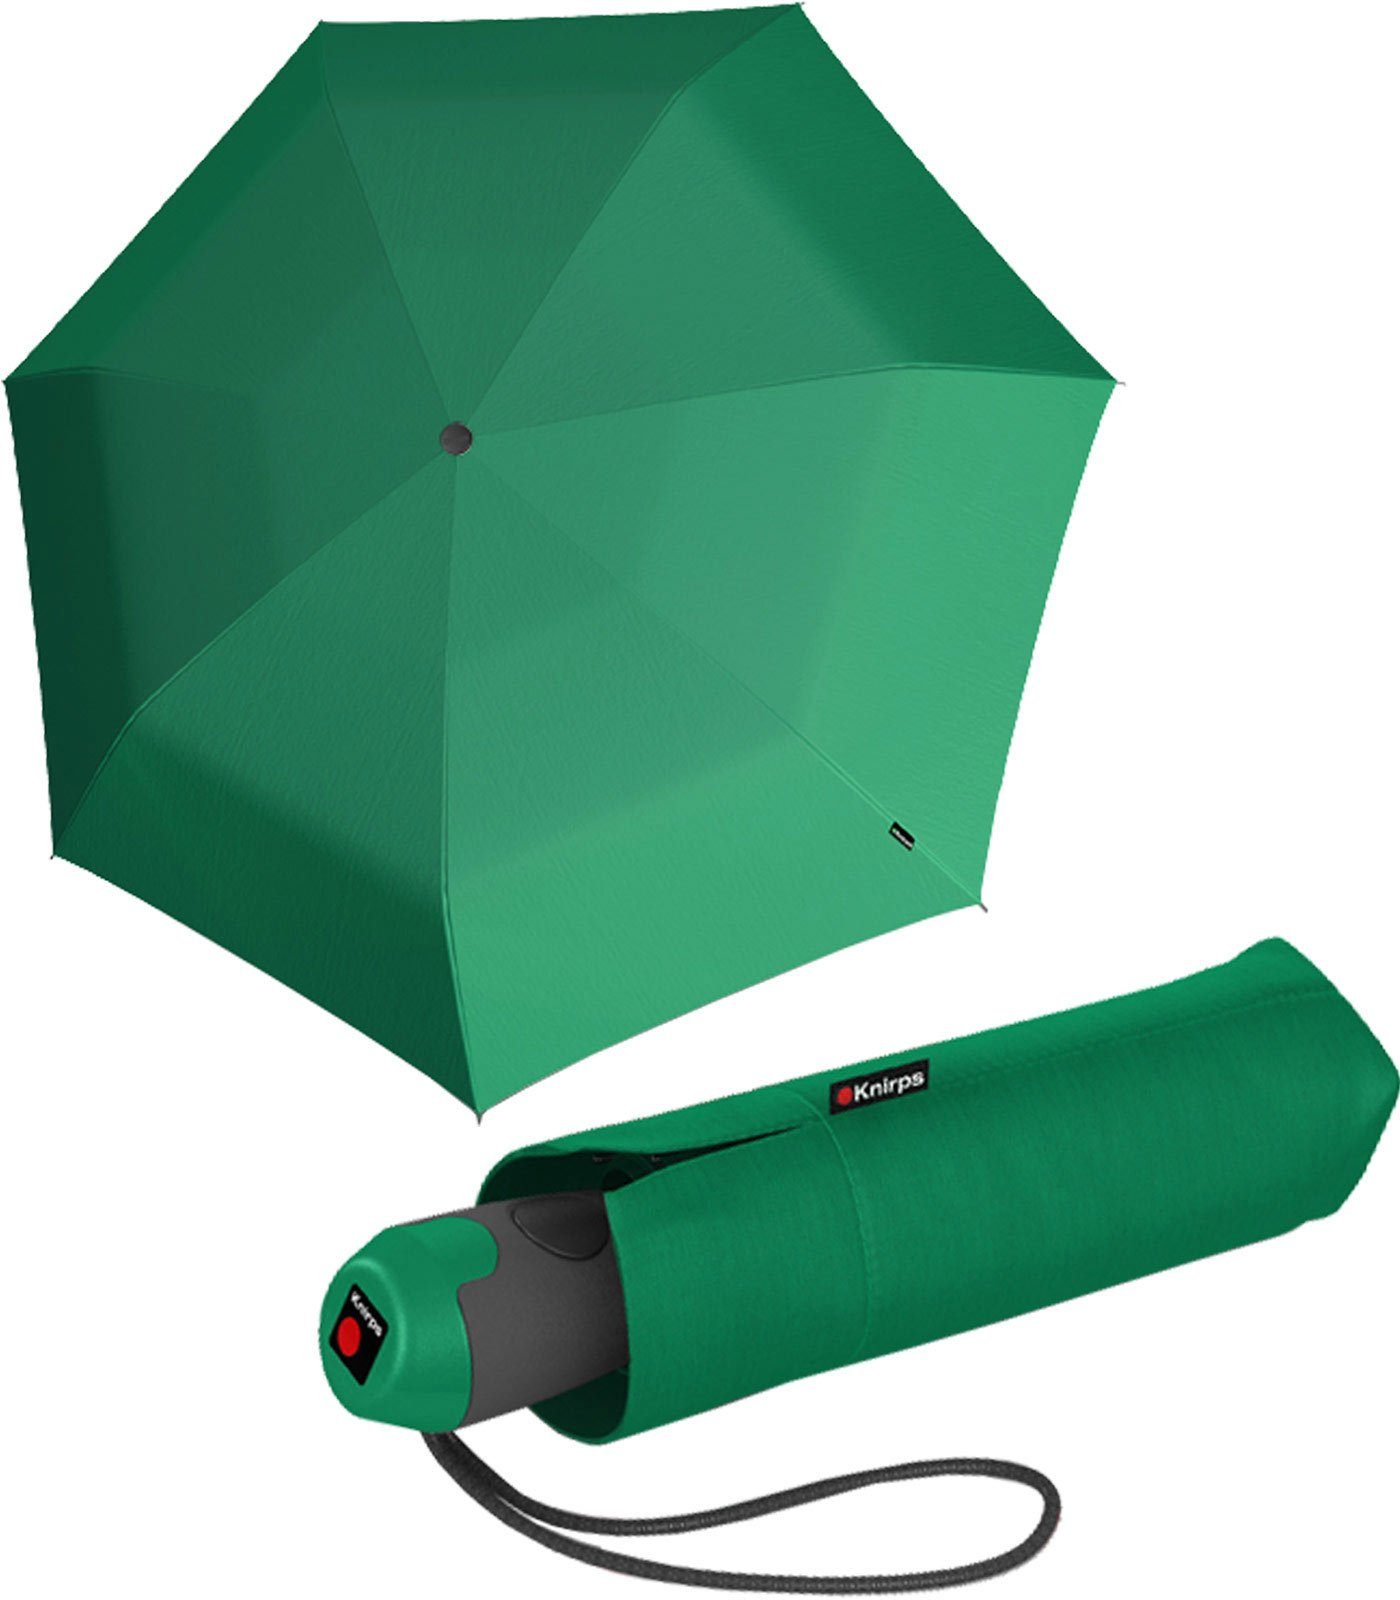 Knirps® Taschenregenschirm E.100 für Handtasche kompakter die Mini-Schirm Automatikschirm green Auf-Zu-Automatik, kleiner, mit